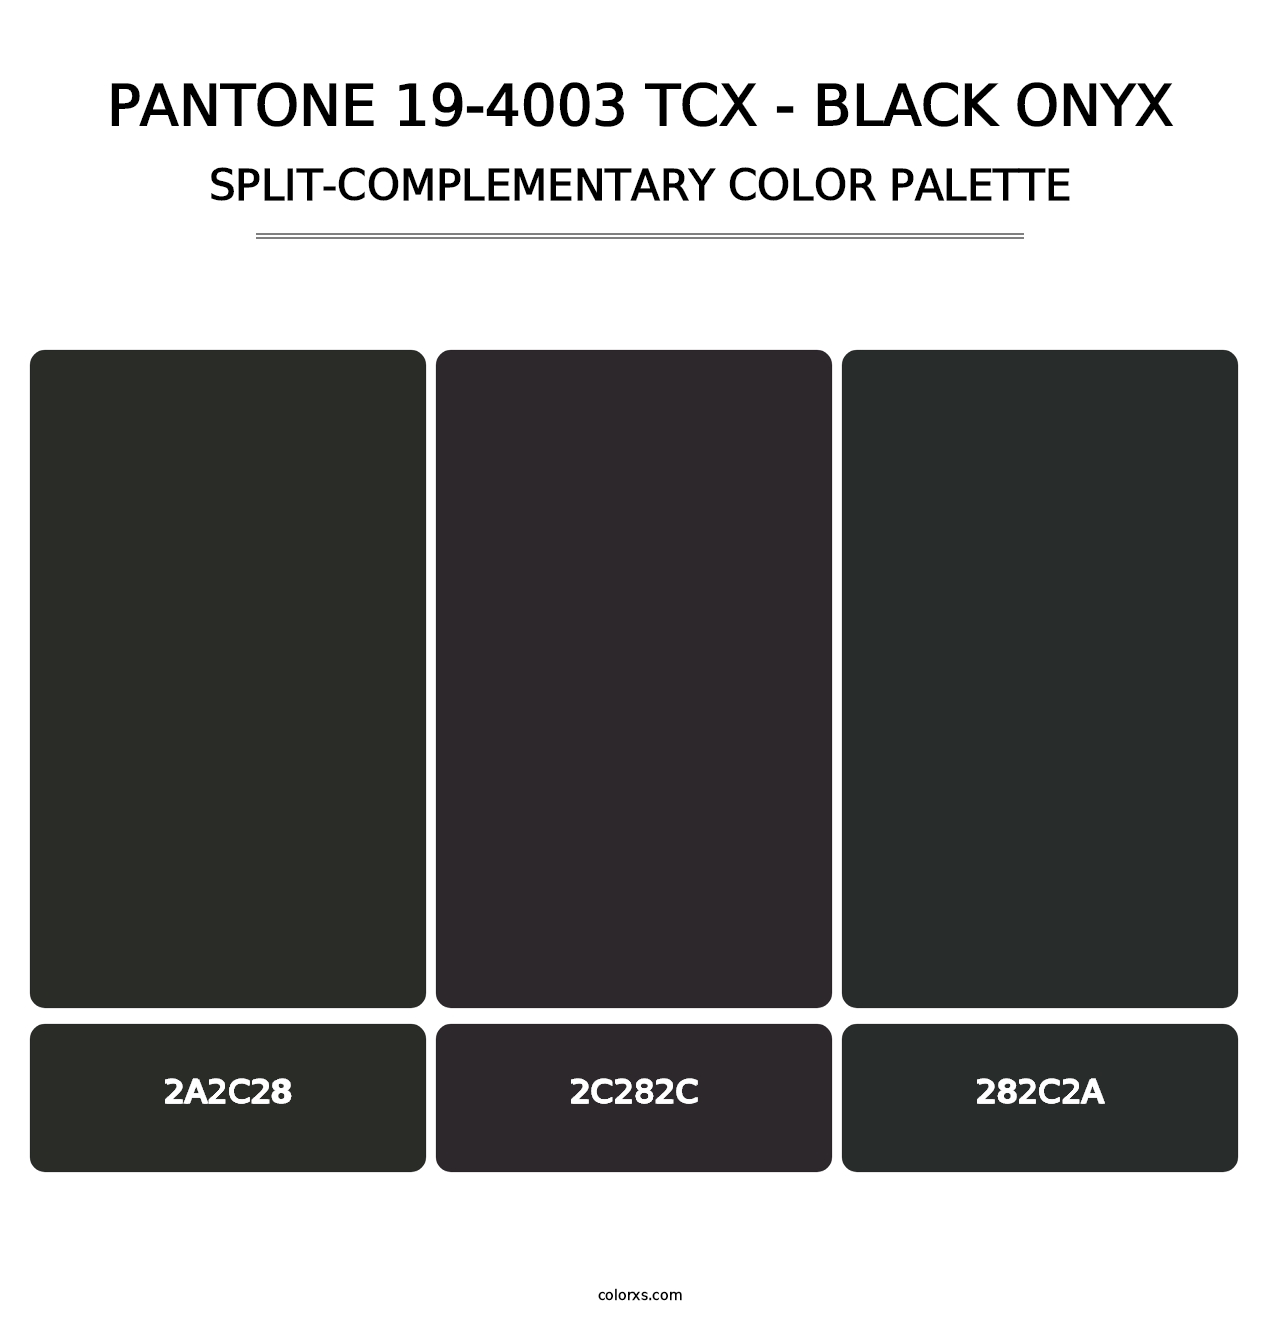 PANTONE 19-4003 TCX - Black Onyx - Split-Complementary Color Palette